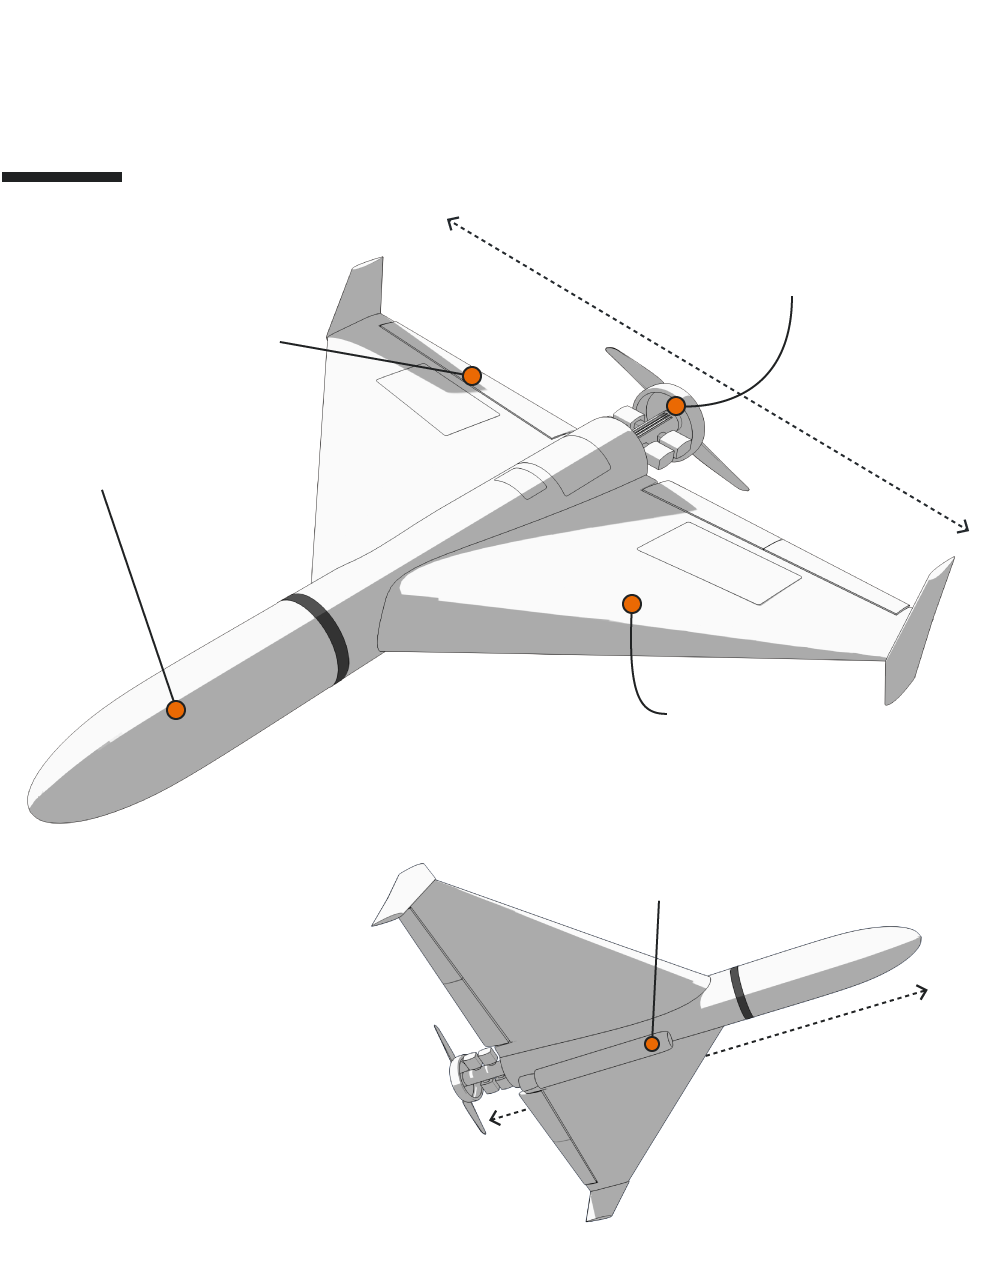 geranium-25 drone